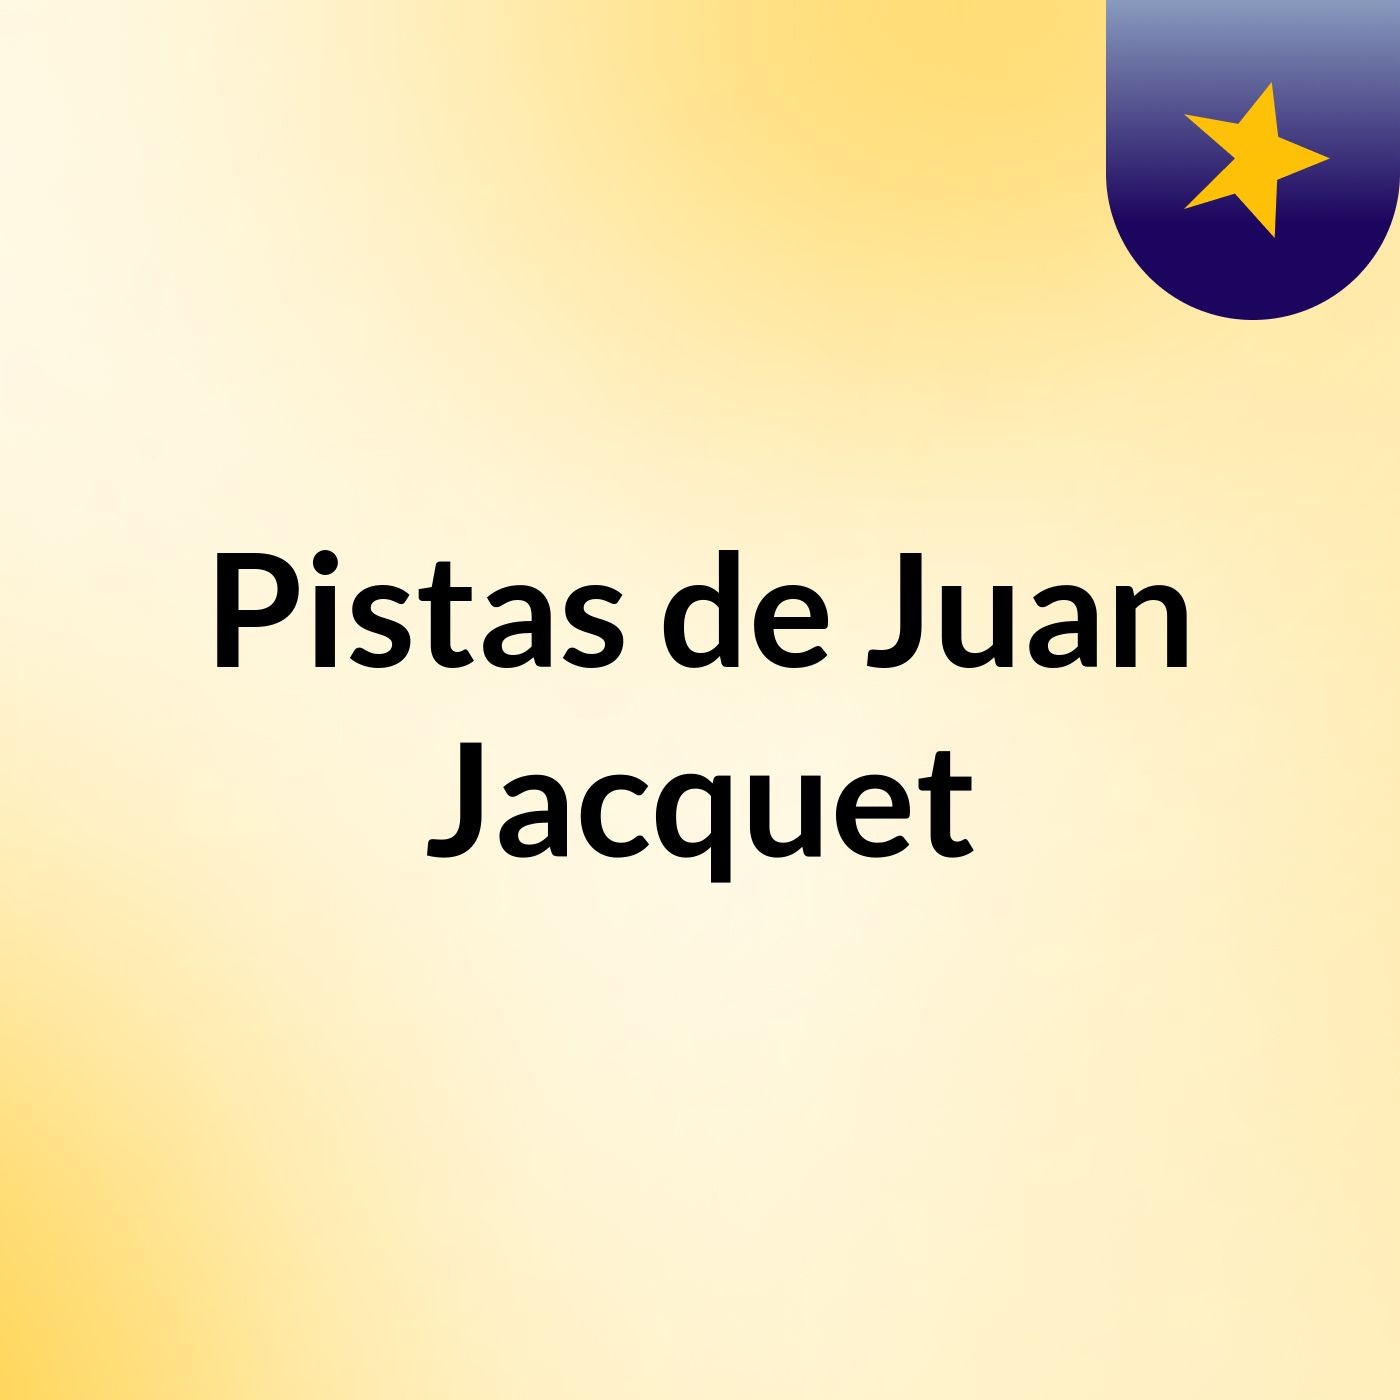 Pistas de Juan Jacquet